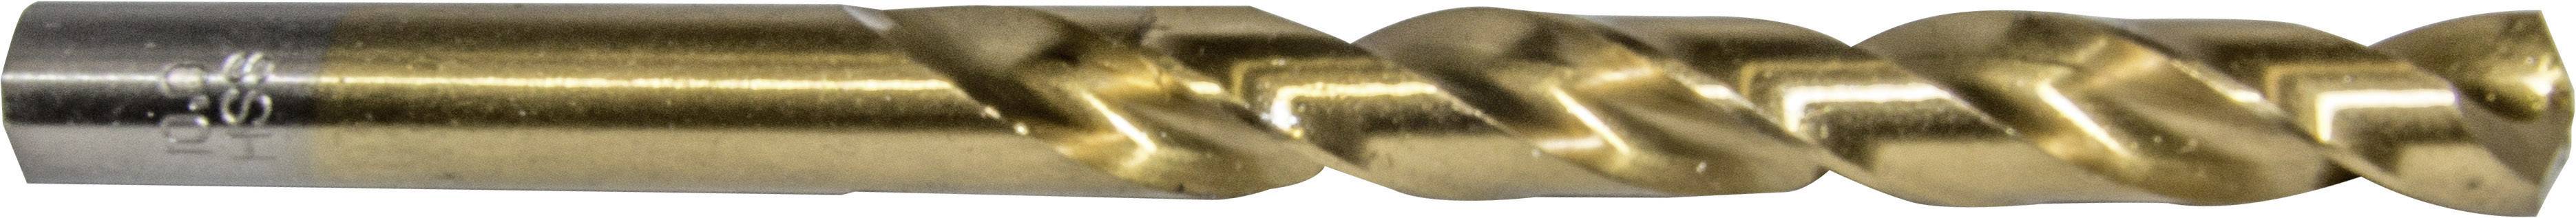 HELLER 29254 2 Metall-Spiralbohrer 1 Stück 2 mm Gesamtlänge 49 mm 1 St.